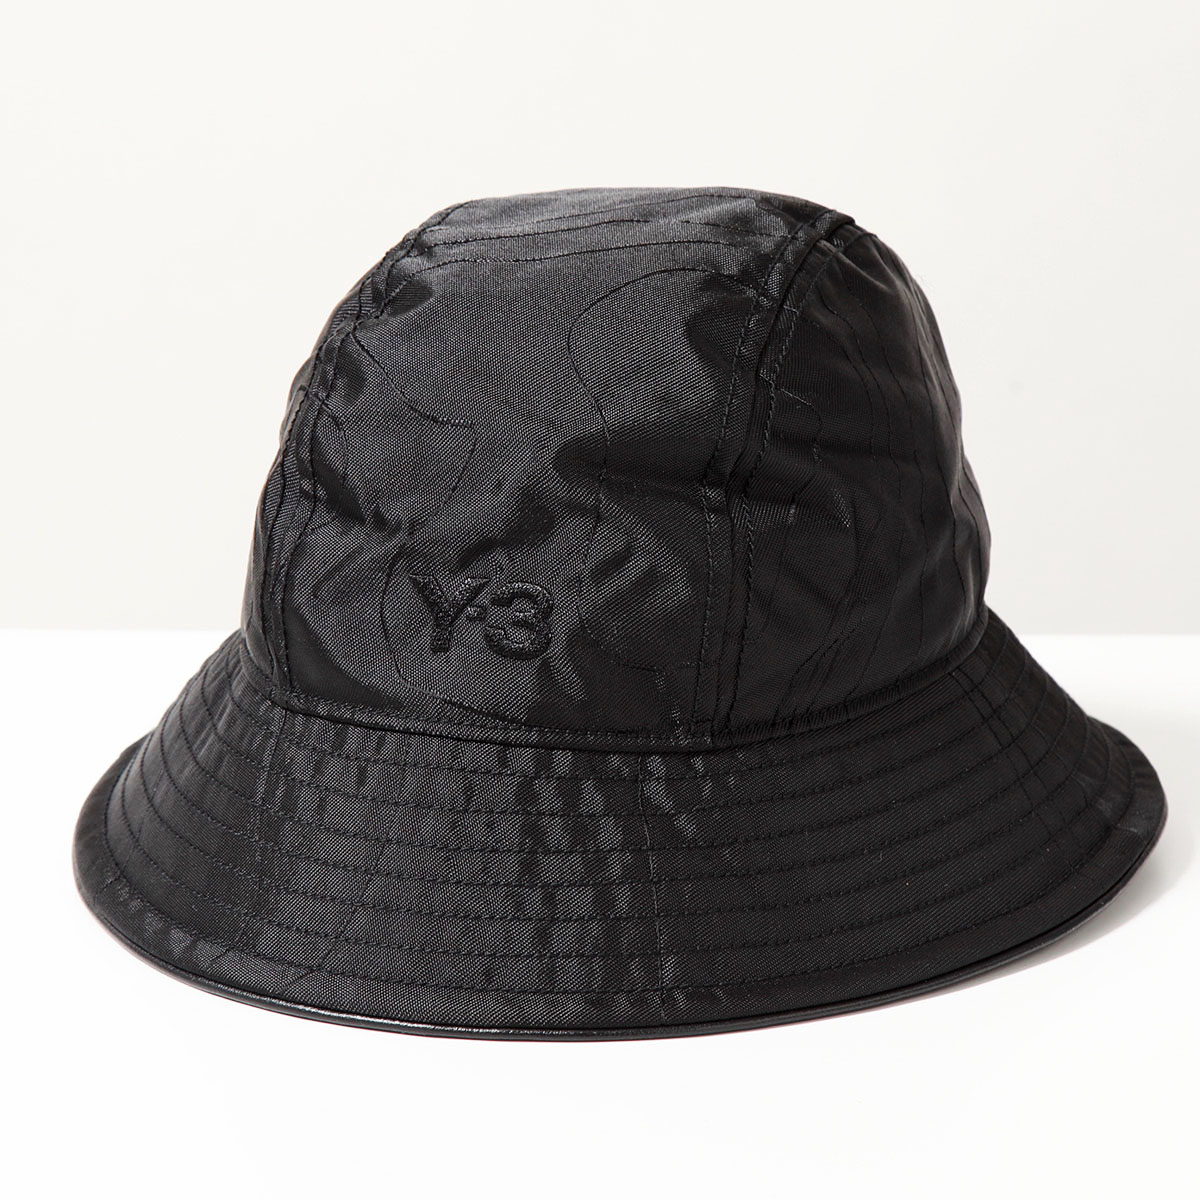 Y-3 ワイスリー バケットハット IS5226 メンズ ナイロン ロゴ刺繍 帽子 BLACK